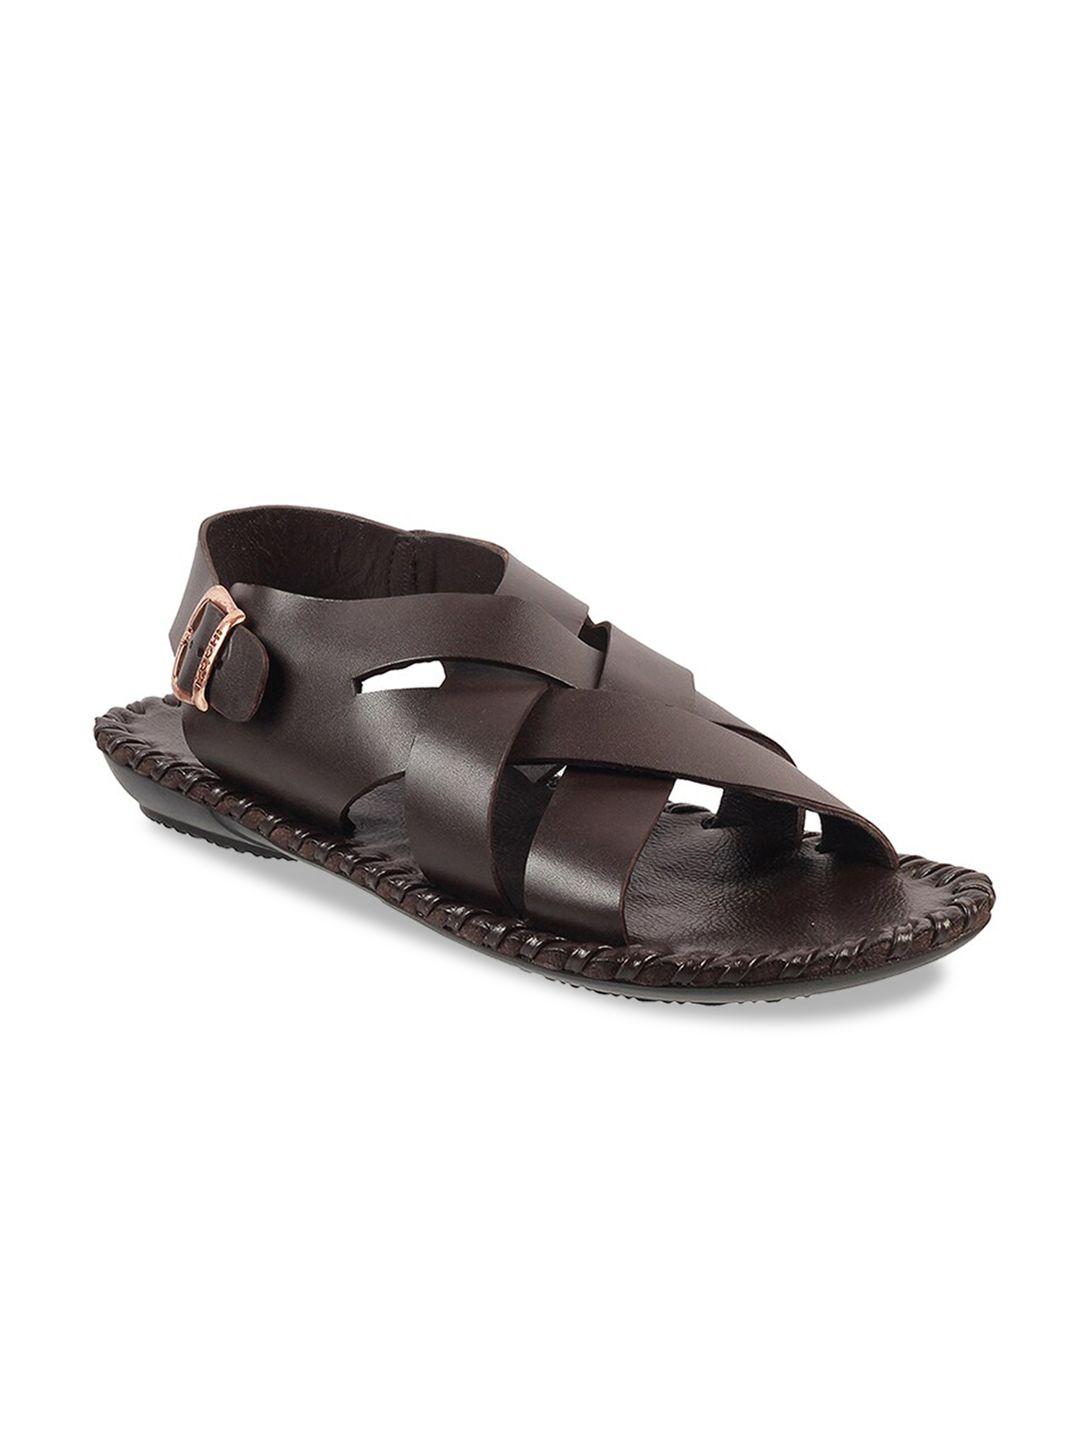 mochi men brown comfort sandals